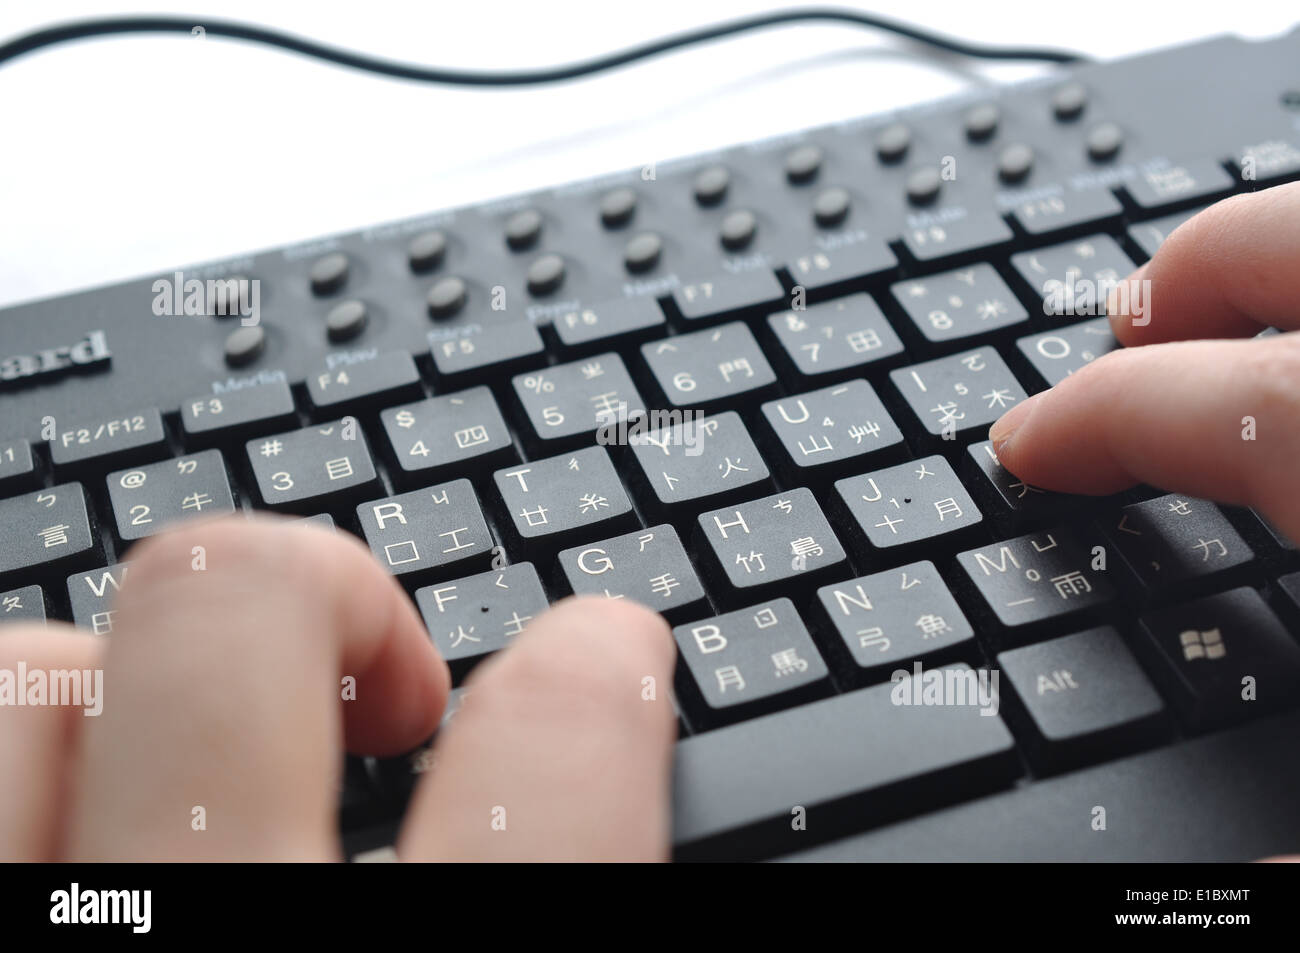 La digitazione sulla tastiera cinese; concentrarsi sulla mano destra primo  dito Foto stock - Alamy